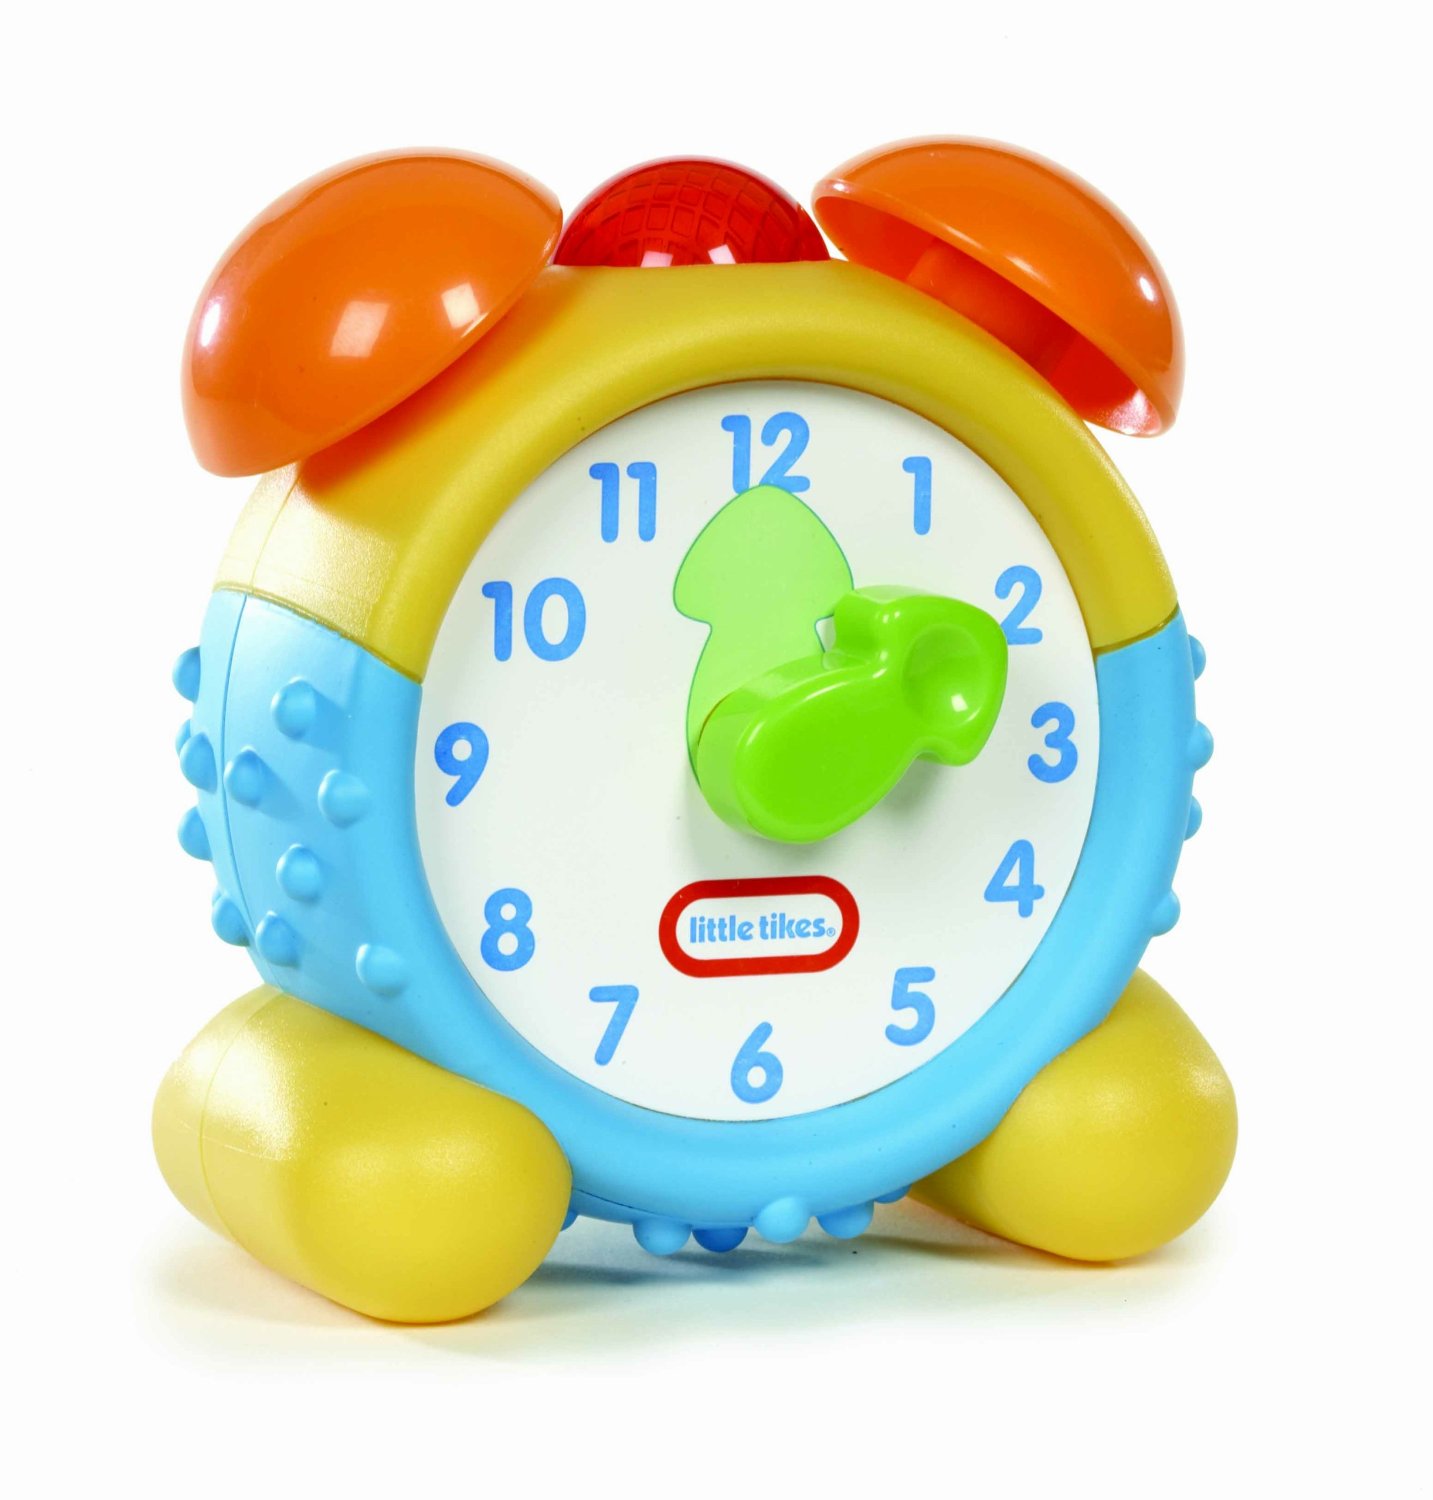 Купить игрушку часы. Игрушечные часы. Игрушка будильник. Будильник игрушка для ребенка. Часы будильник.